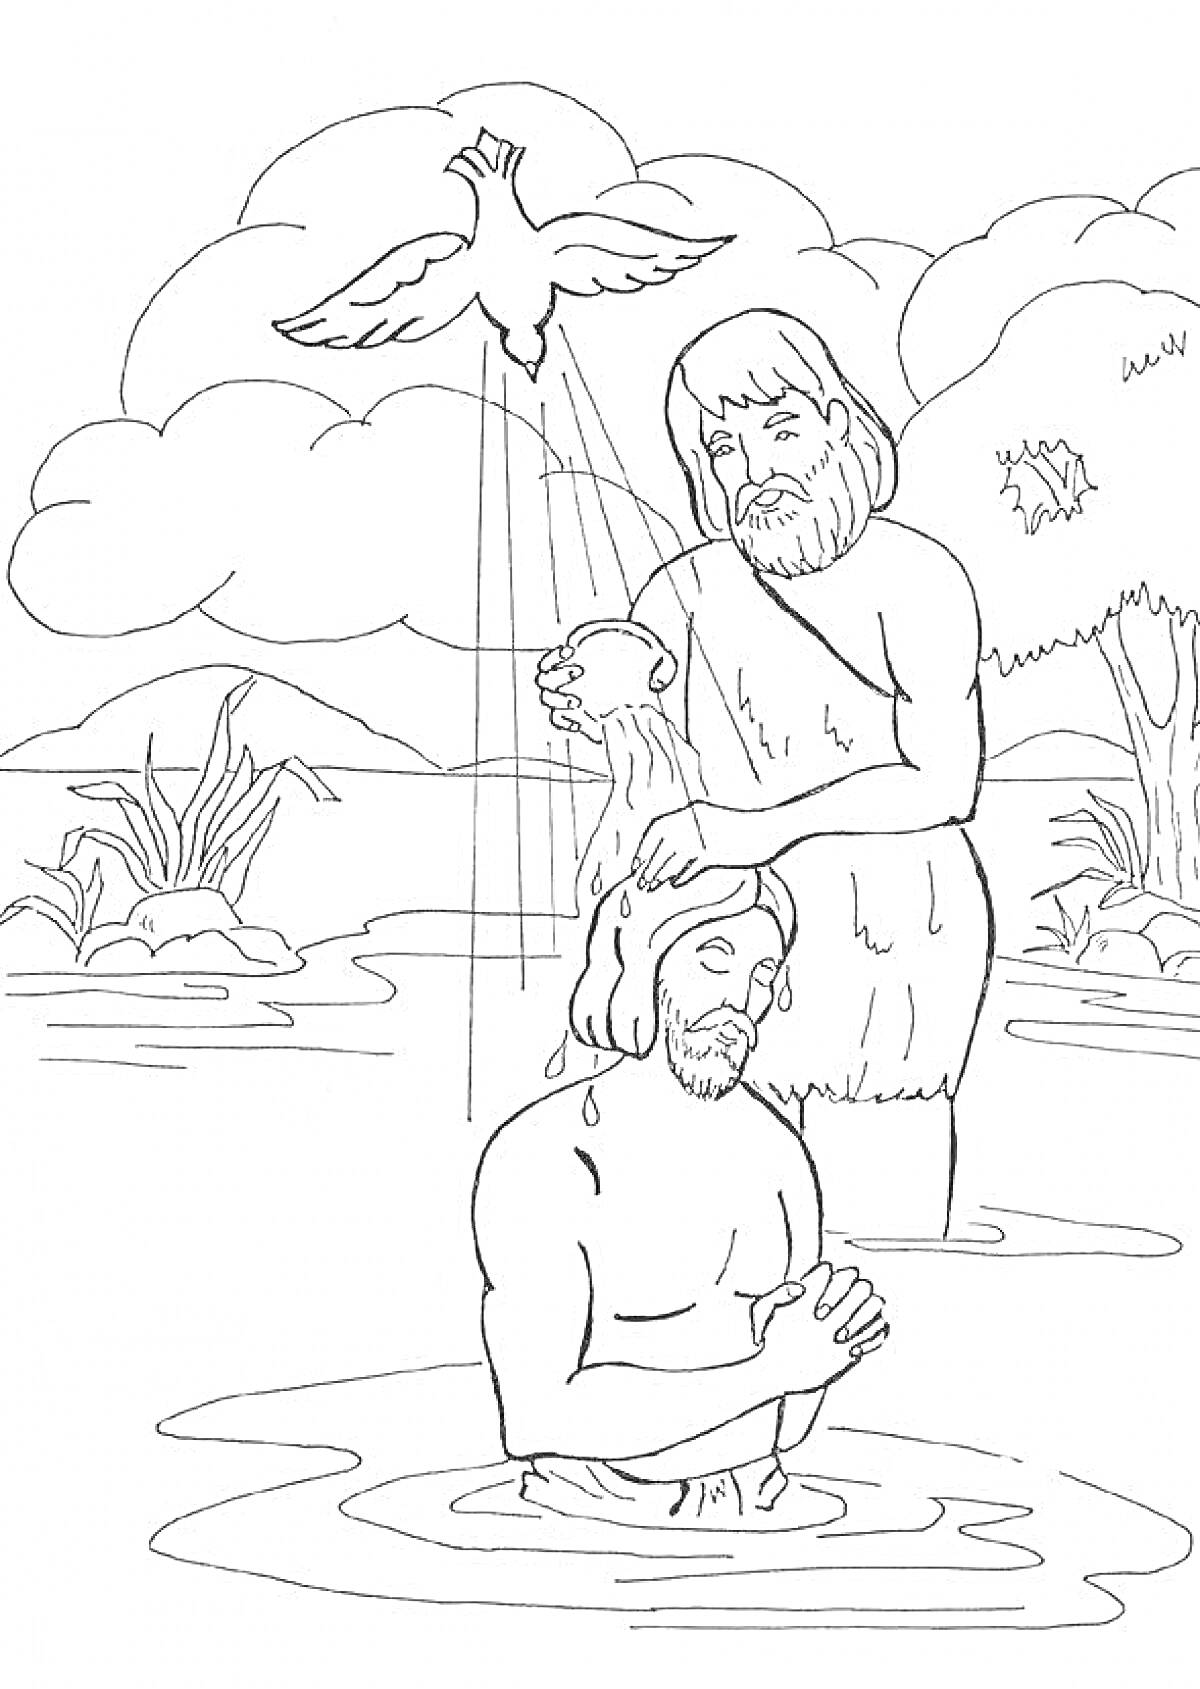 Крещение в реке, Иисус и Иоанн Креститель, голубь, вода, деревья и кусты на заднем плане